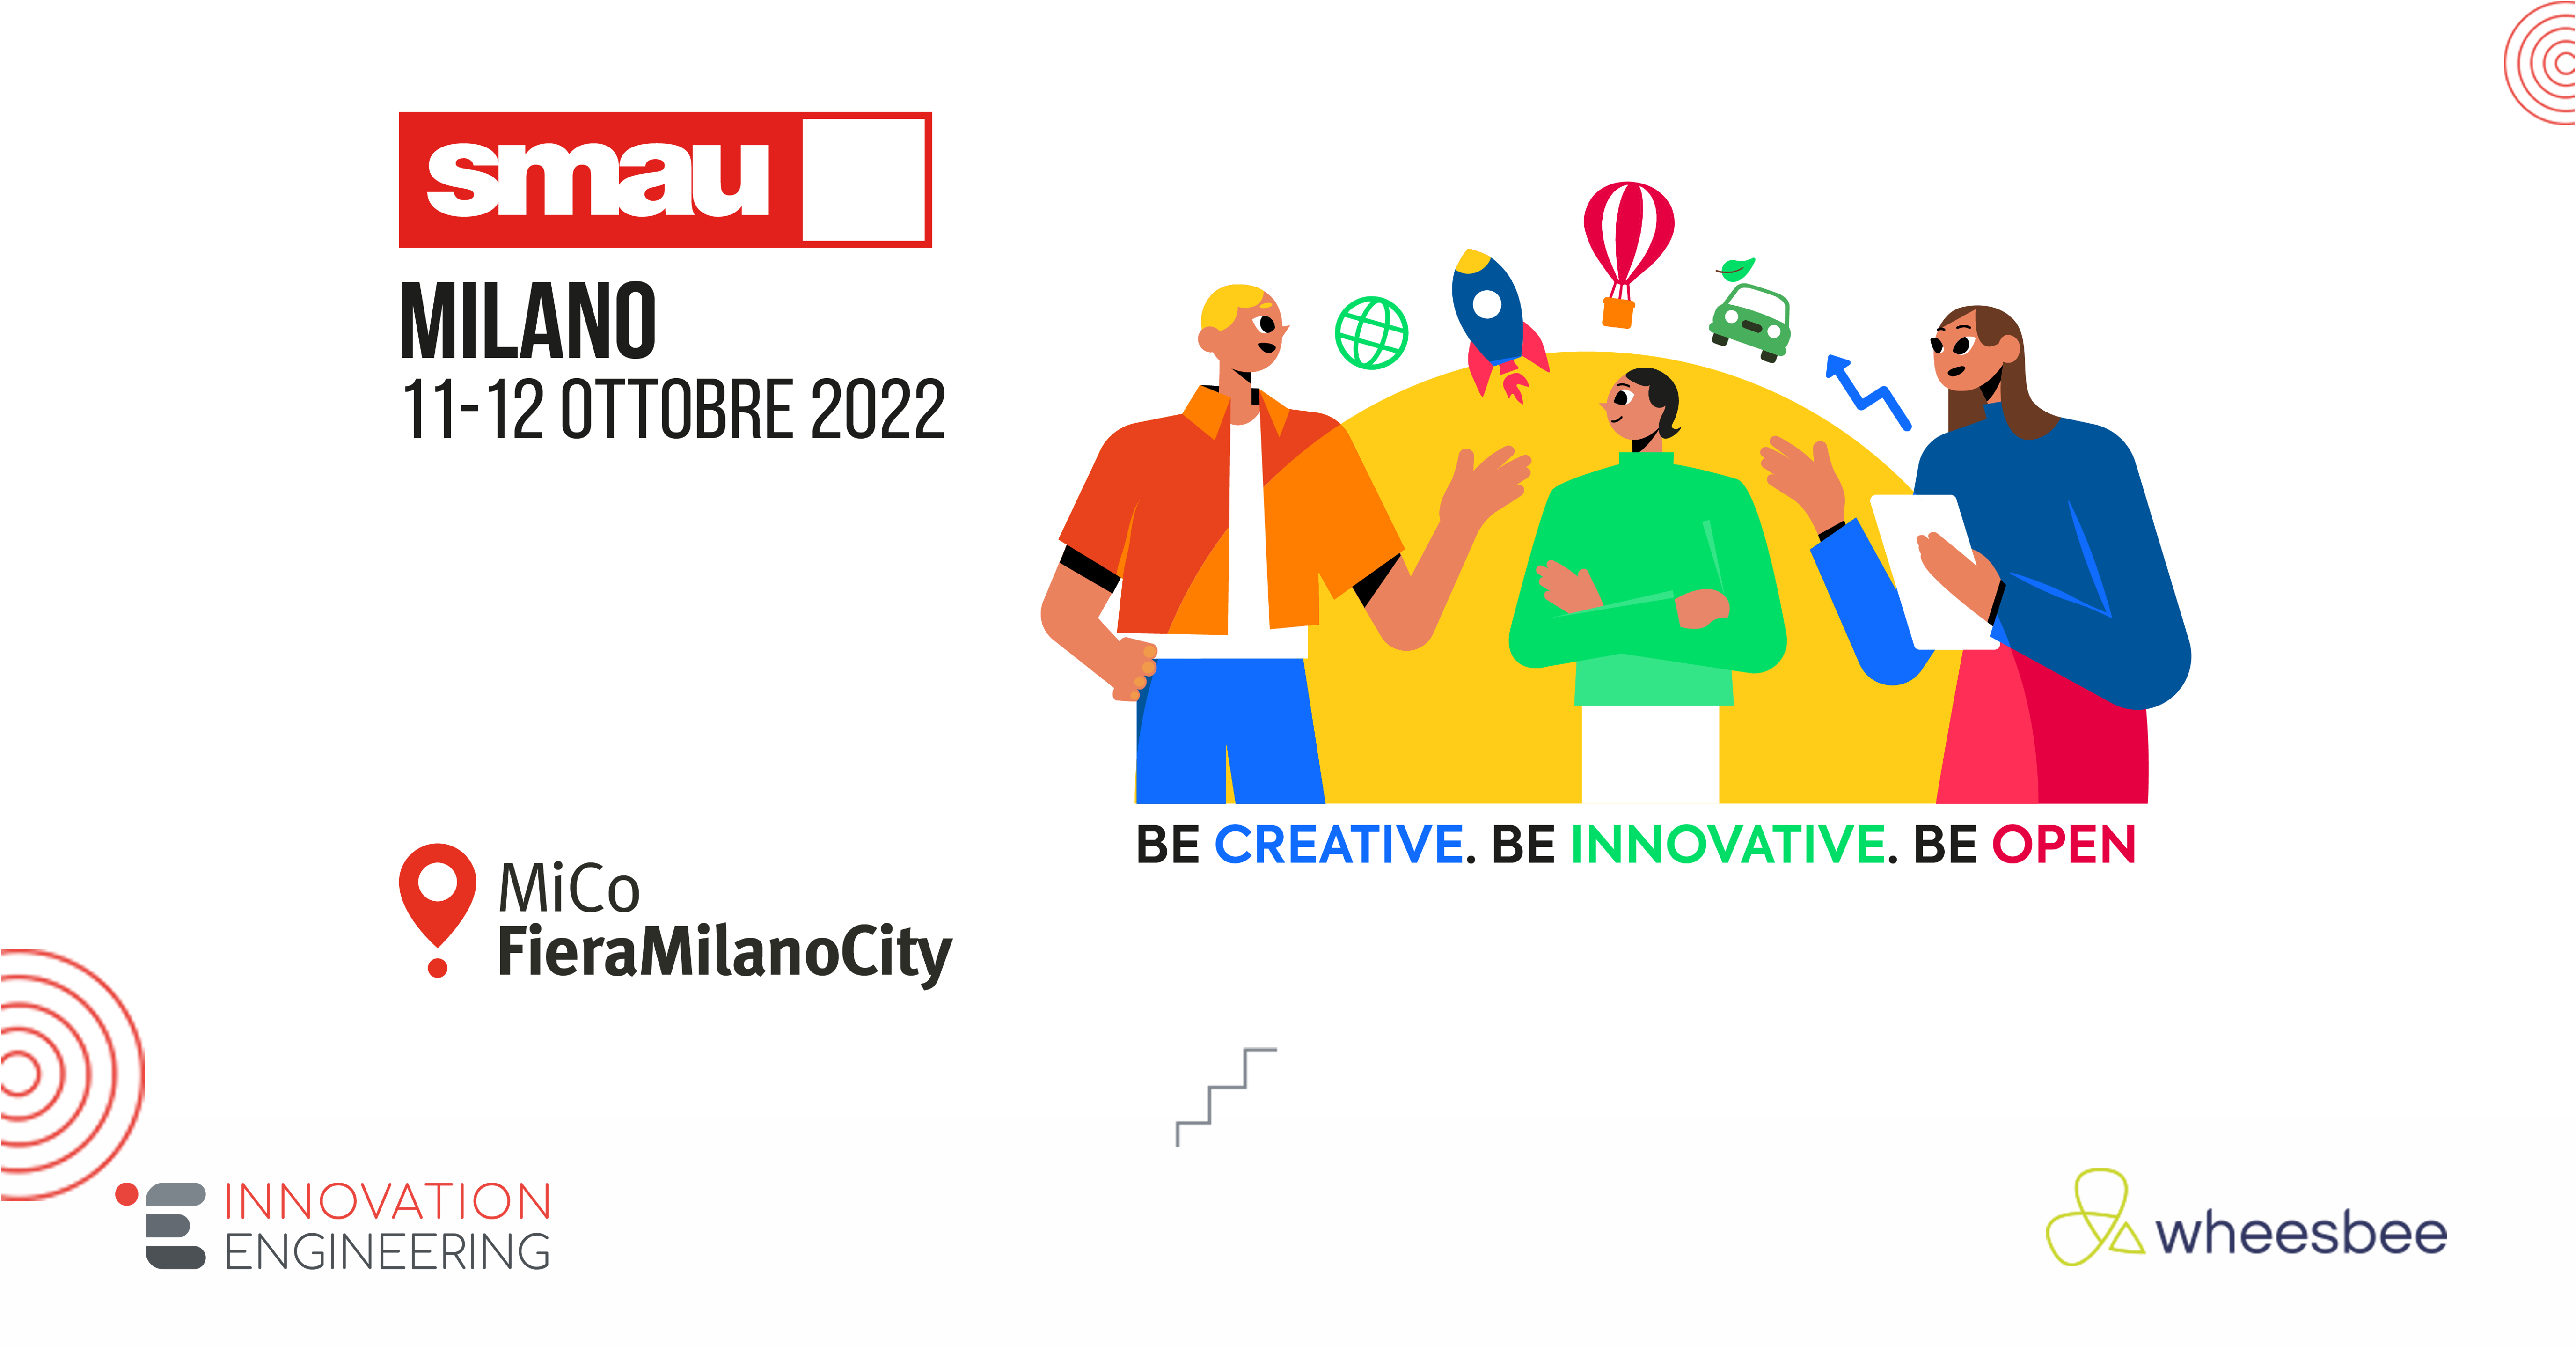 Innovation Engineering e Wheesbee a Milano per la nuova tappa di SMAU 2022